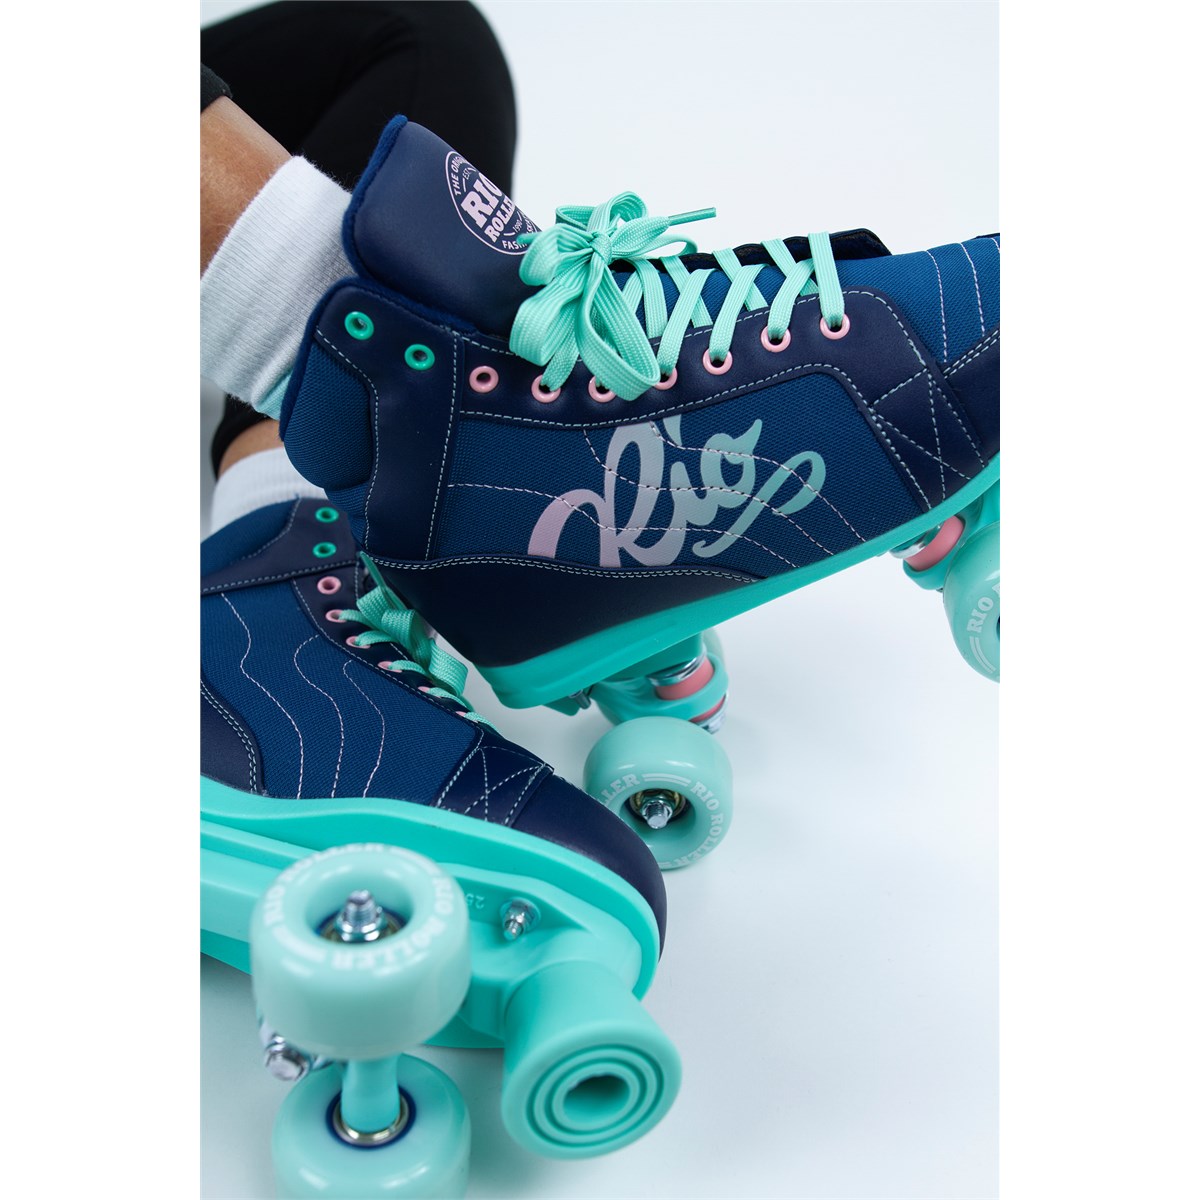 Rio Roller Lumina Quad Skate